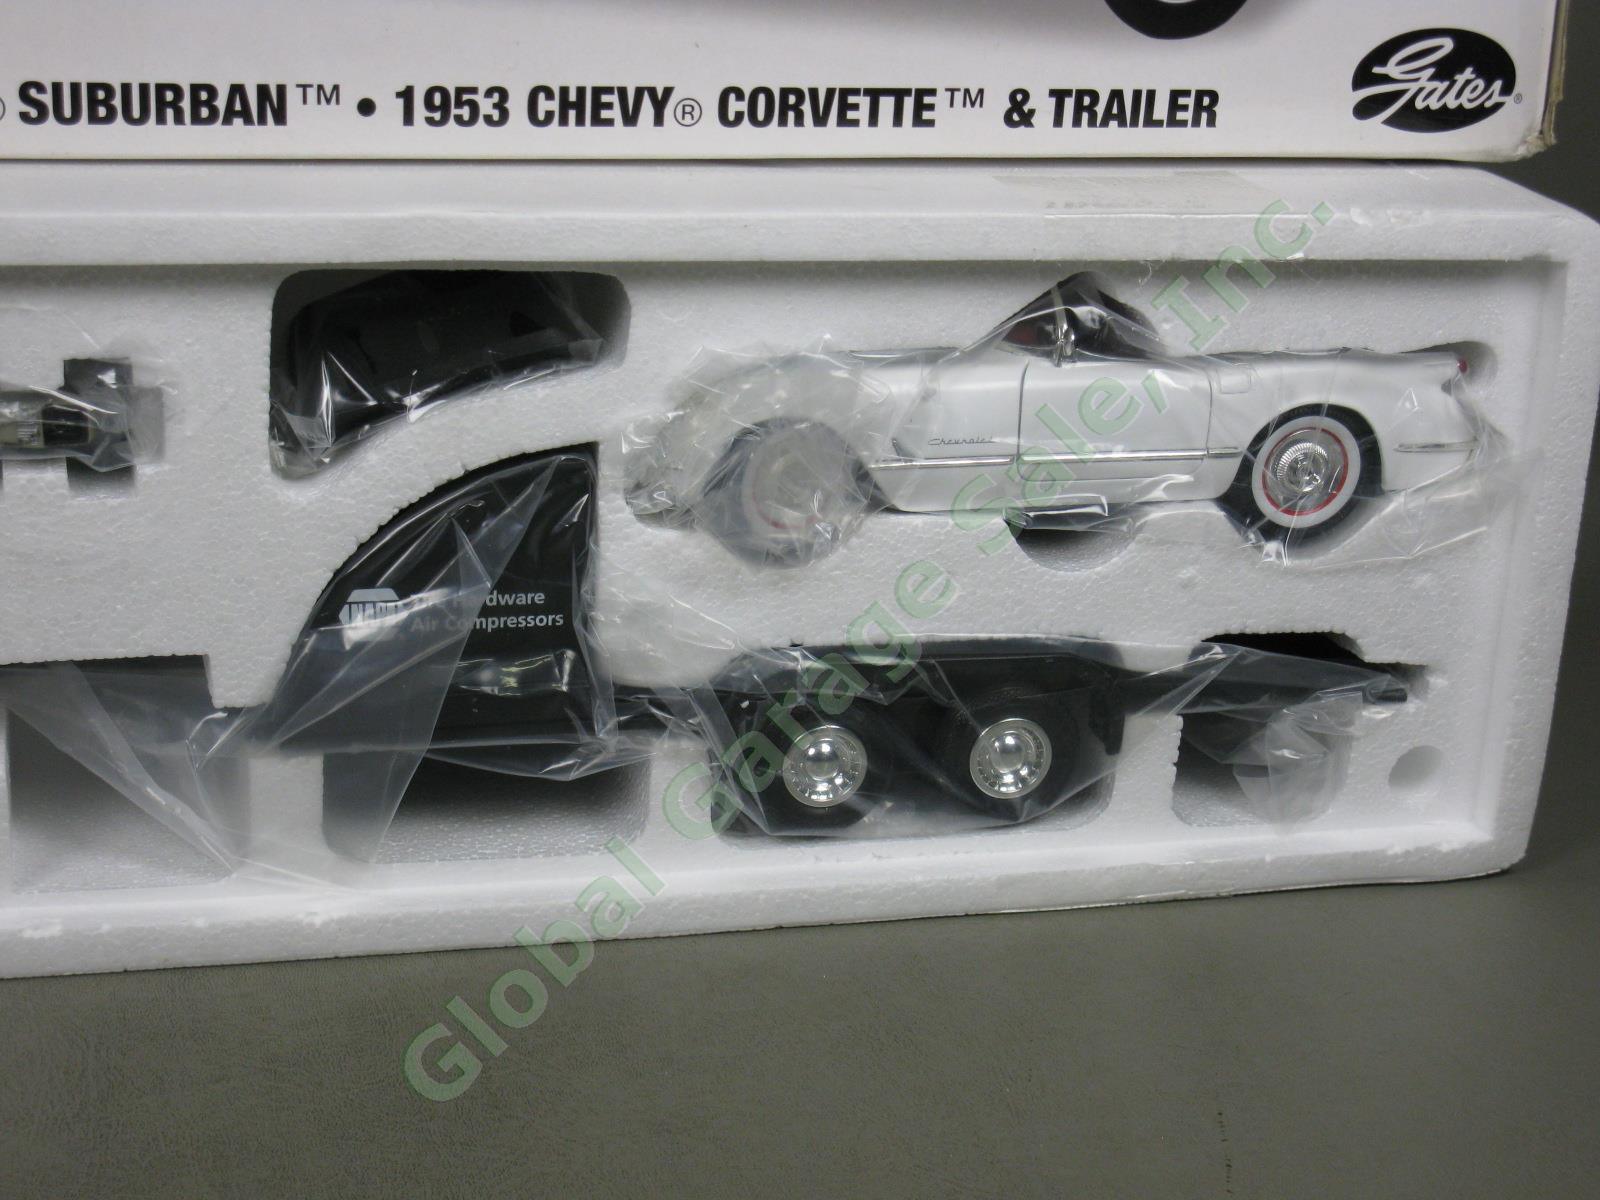 NIB Racing Champions RC2 1:18 Chevy Suburban 1953 Corvette Trailer Set NAPA NR 1